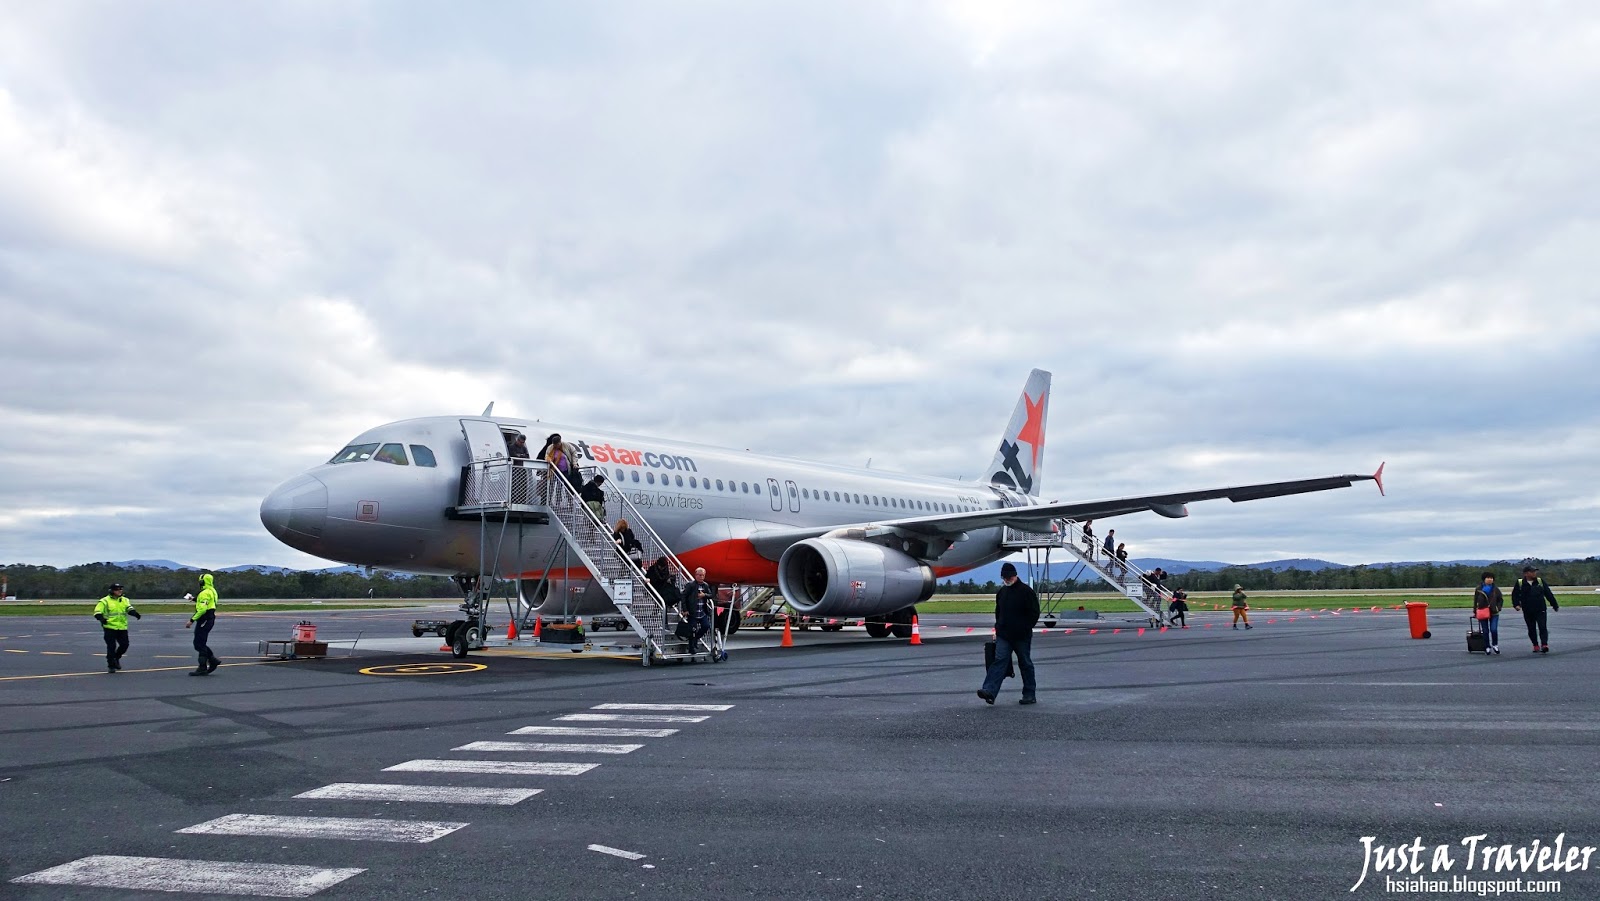 澳洲-廉航-廉價航空-布里斯本機場-塔斯馬尼亞-荷伯特機場-捷星-維珍-機票-訂票-Australia-Budget-Airline-Brisbane-Tasmania-Airport-Jetstar-Virgin